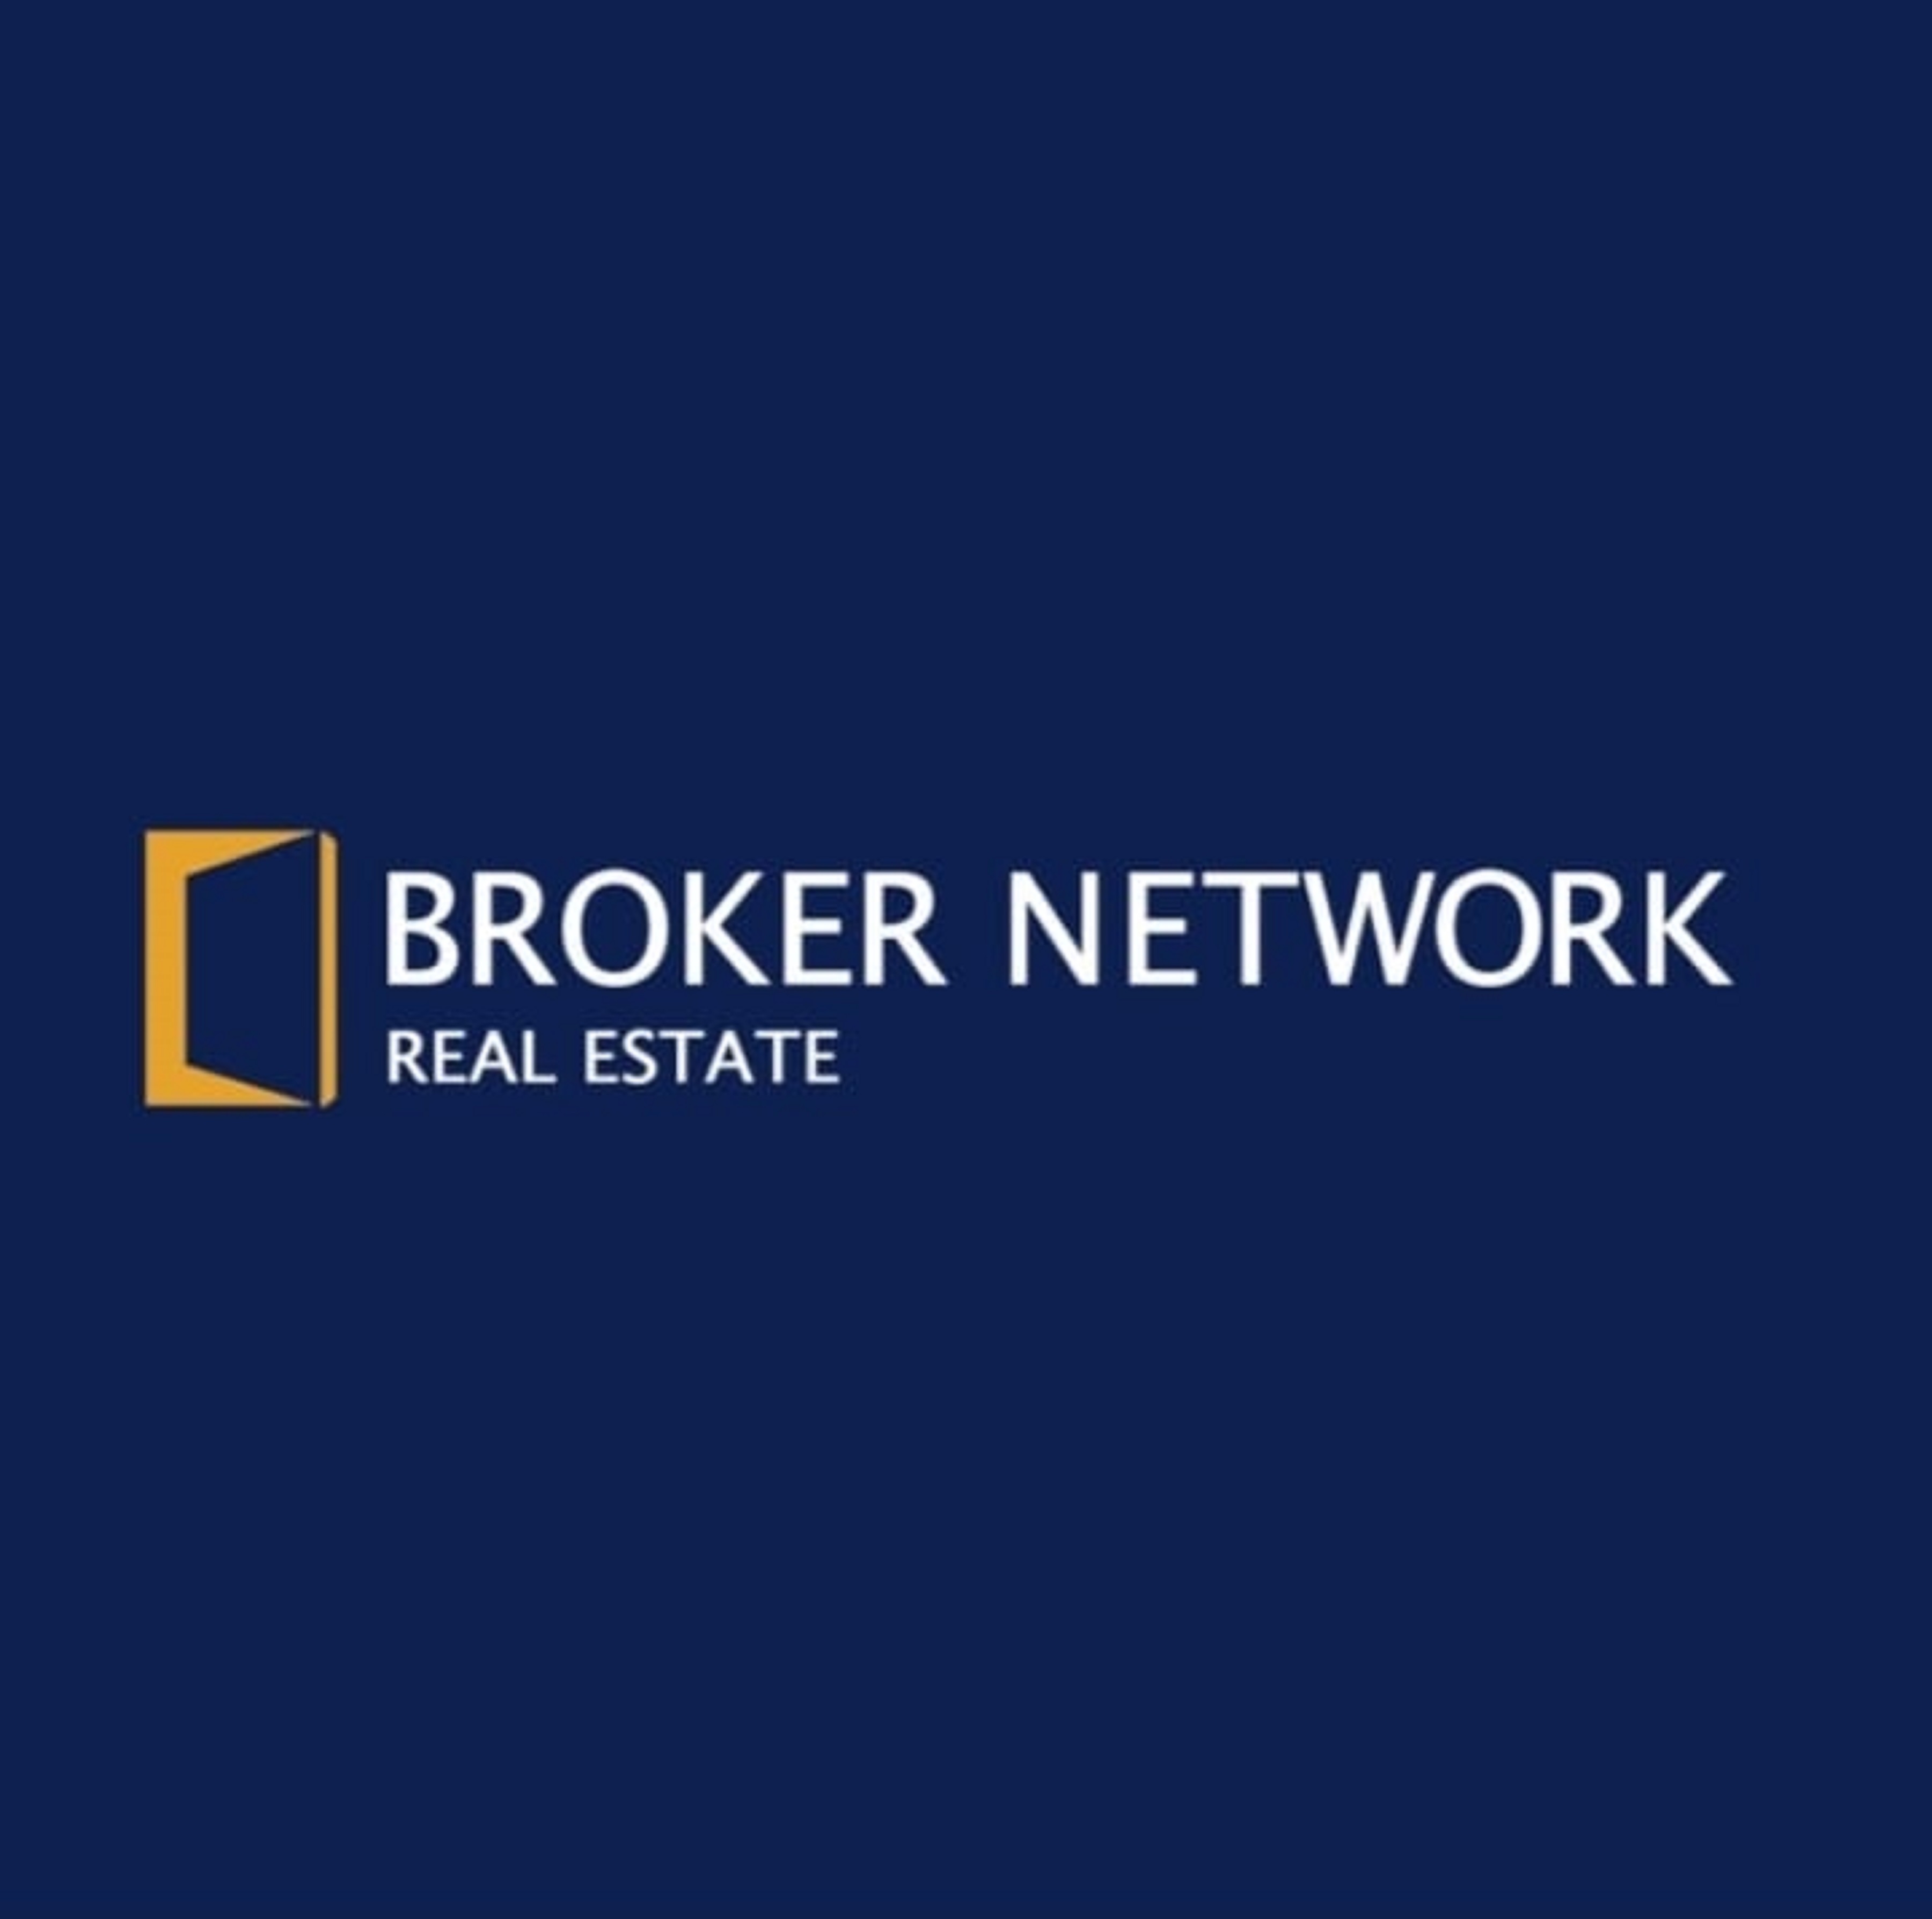 Broker Network Real Estate